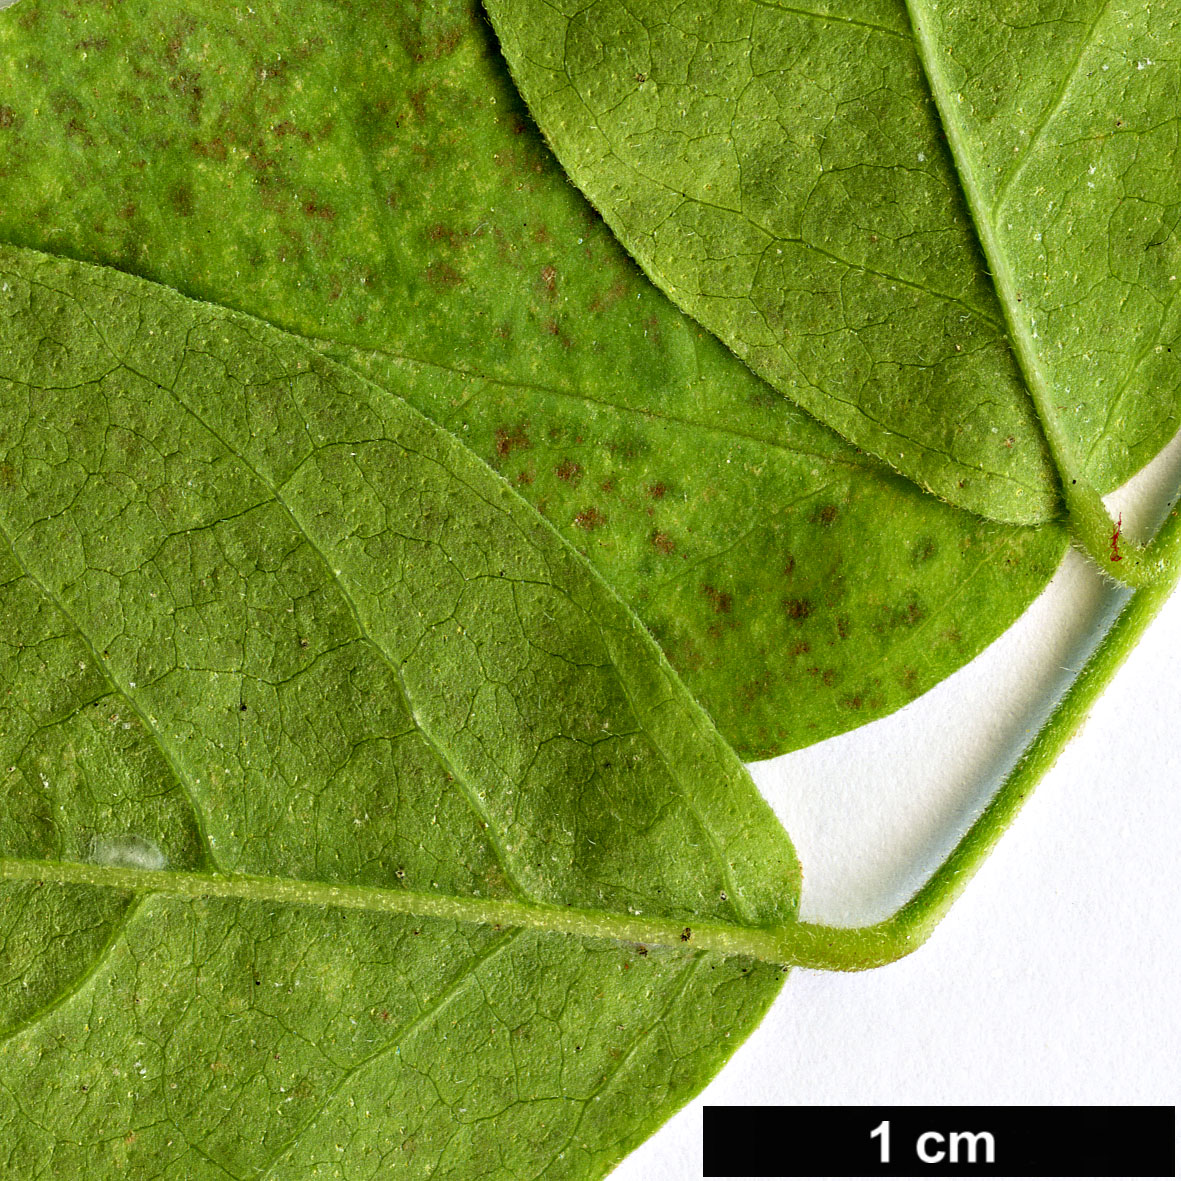 High resolution image: Family: Fabaceae - Genus: Glycyrrhiza - Taxon: glabra